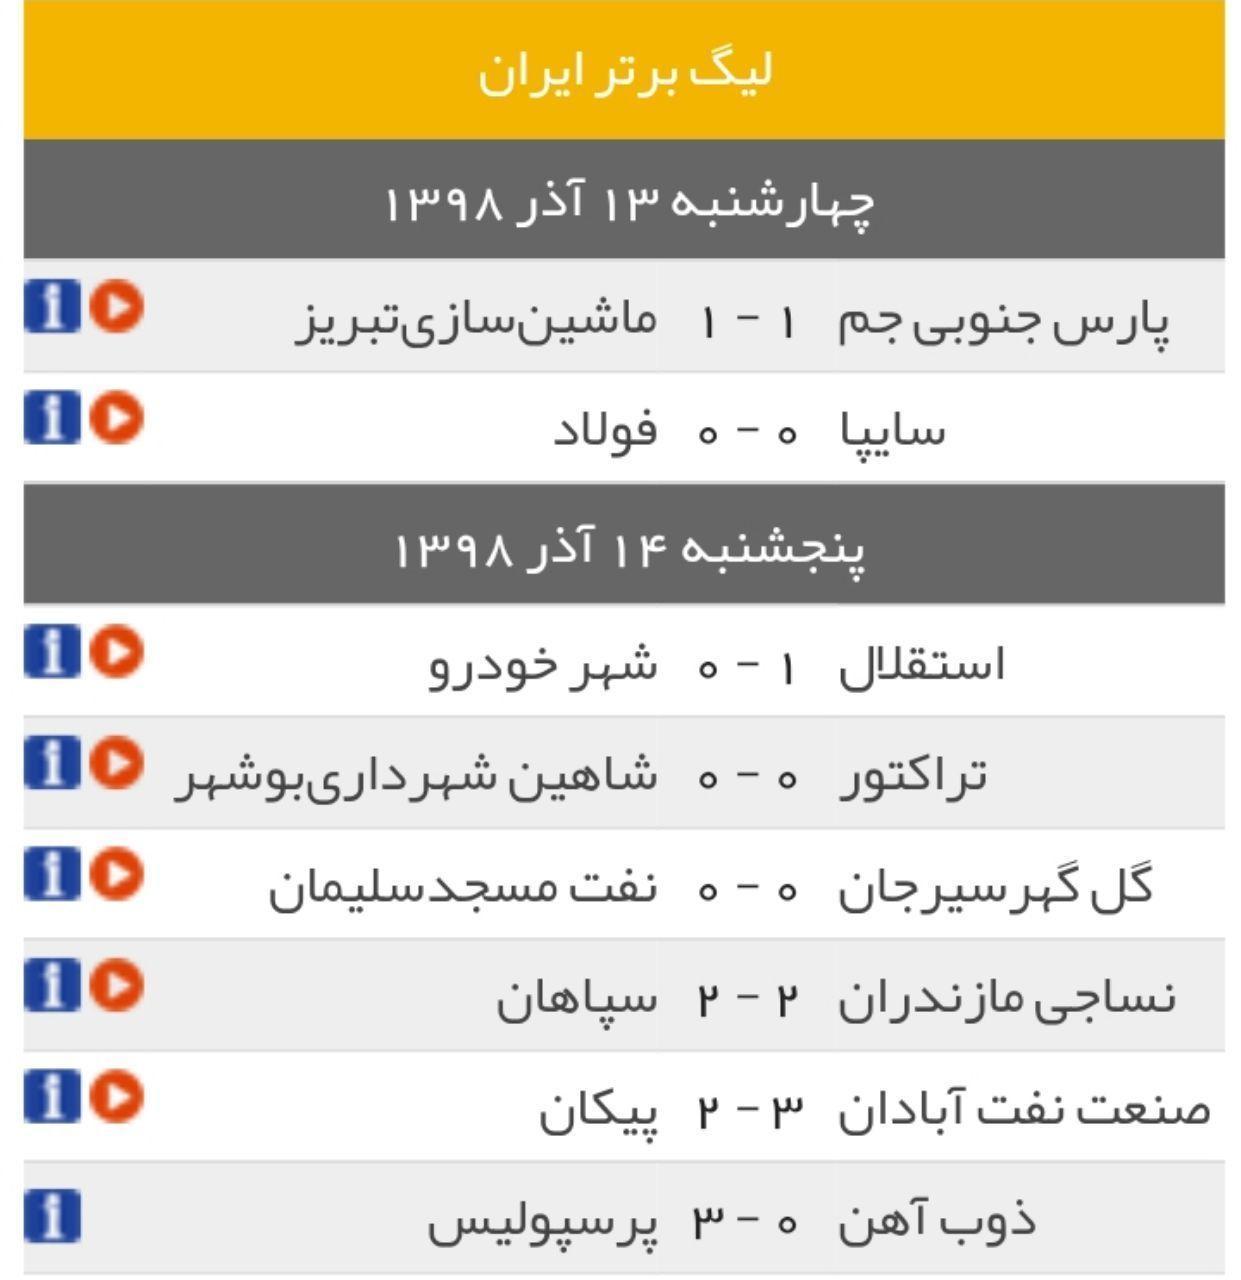 نتایج کامل هفته سیزدهم لیگ برتر فوتبال ایران